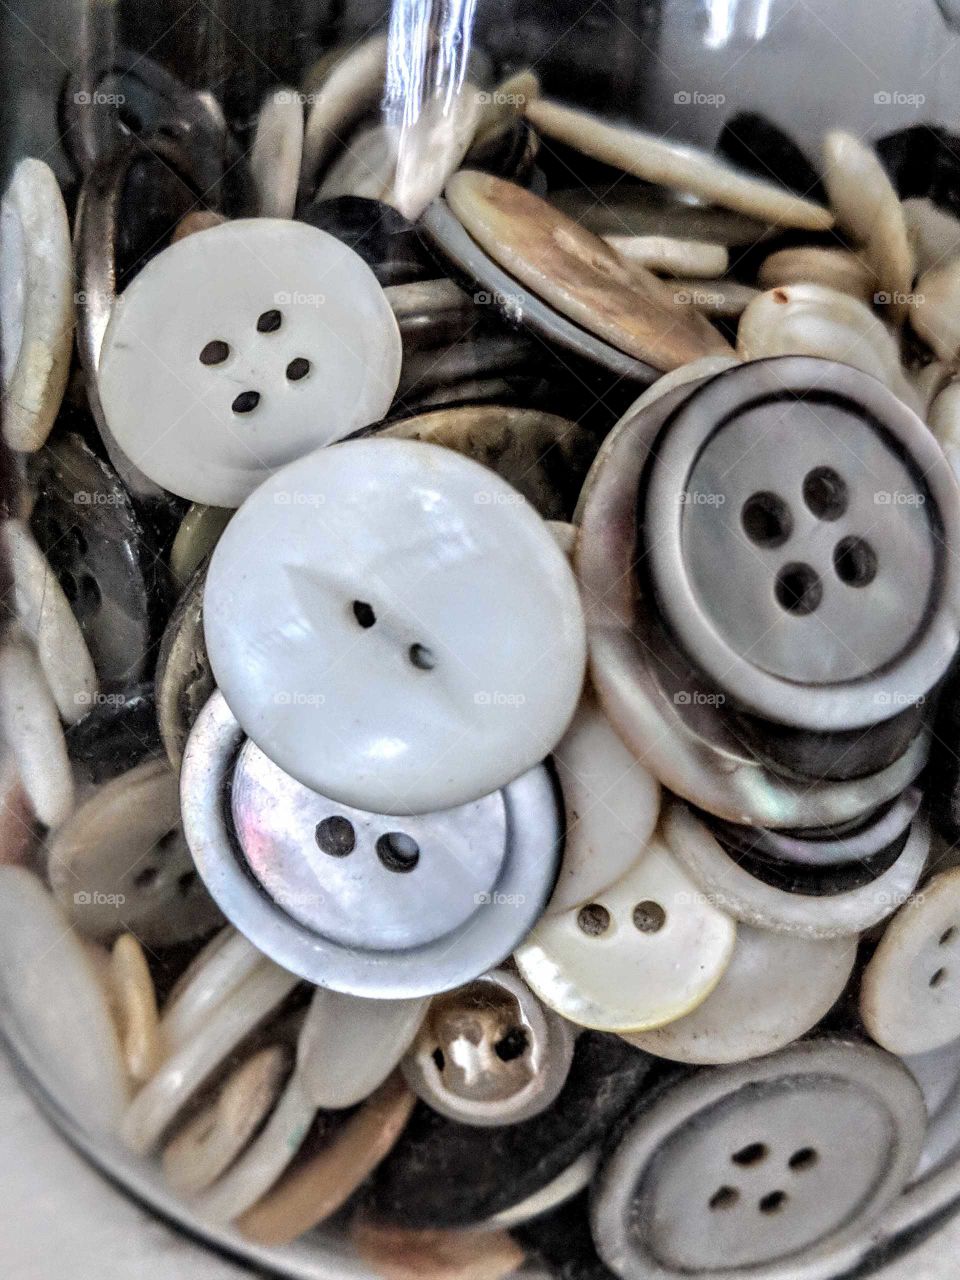 jar of buttons close up